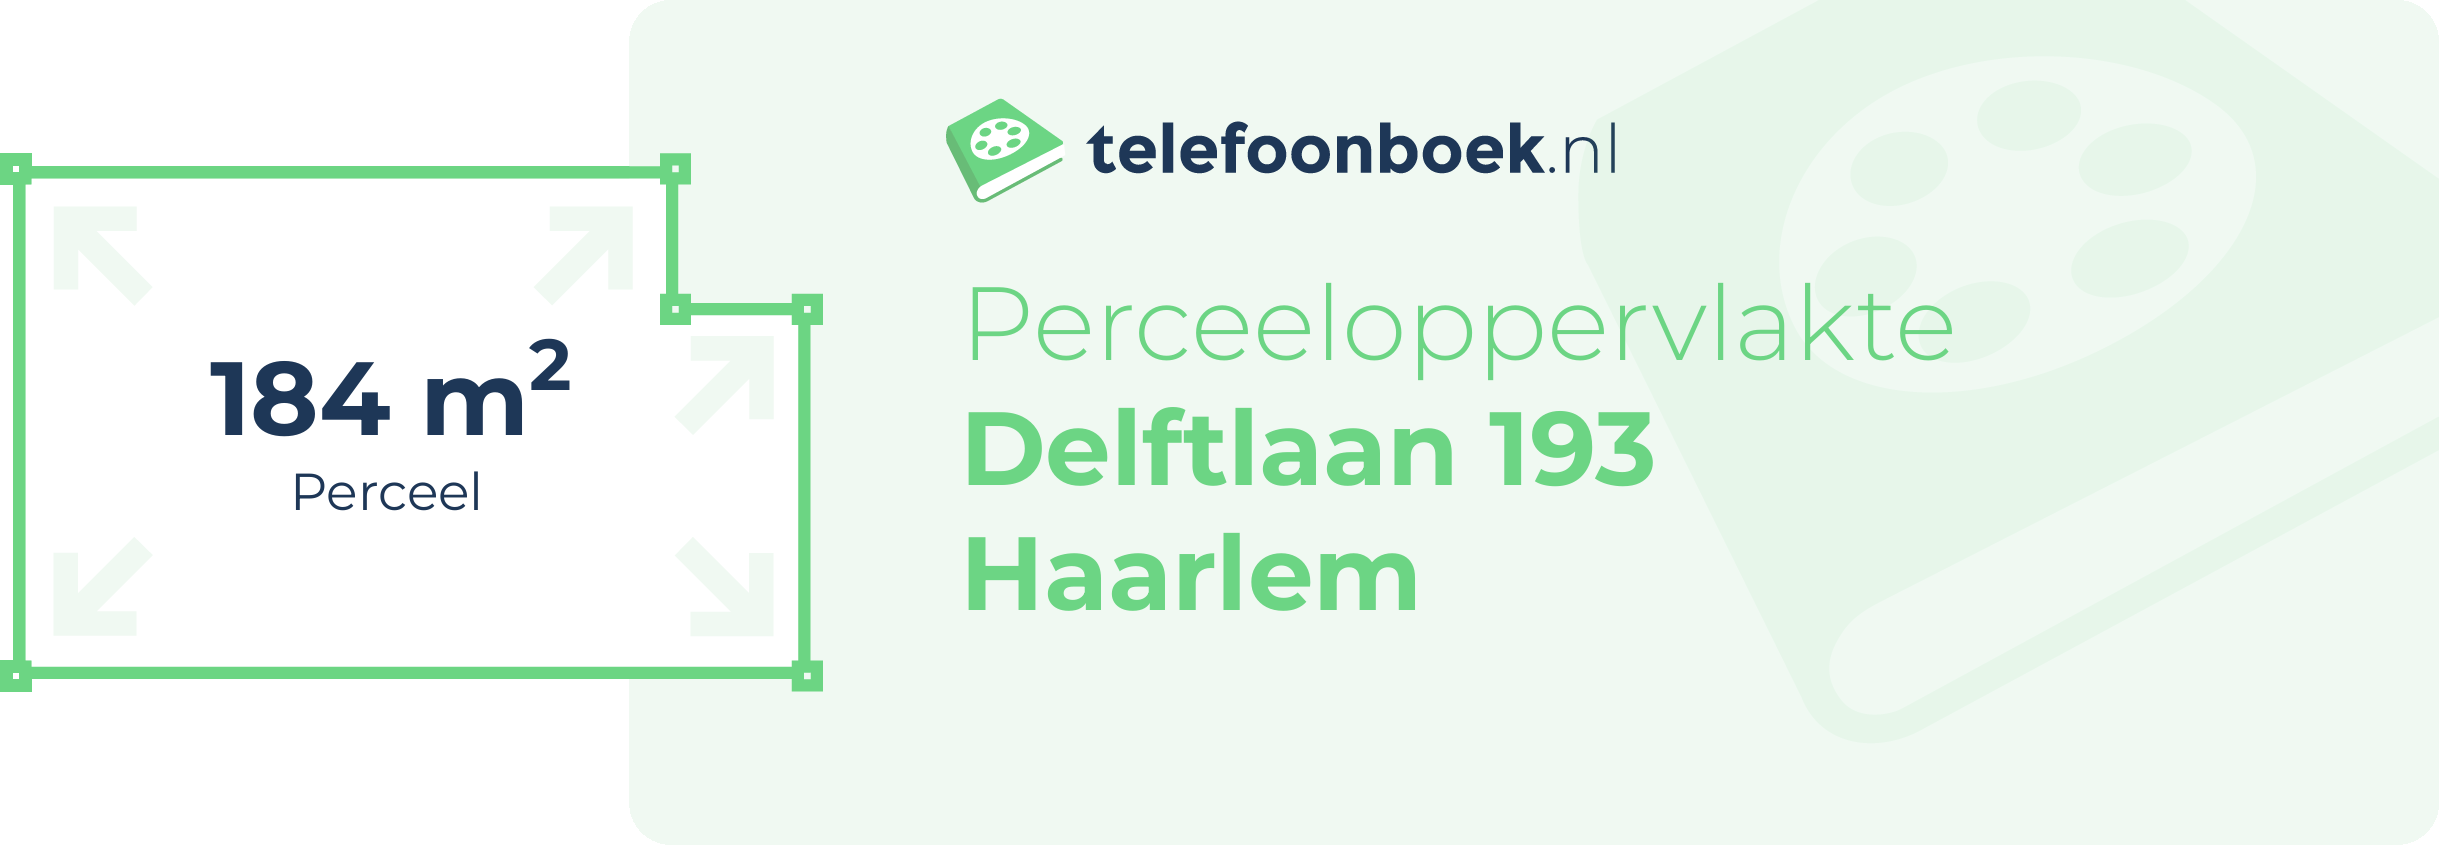 Perceeloppervlakte Delftlaan 193 Haarlem